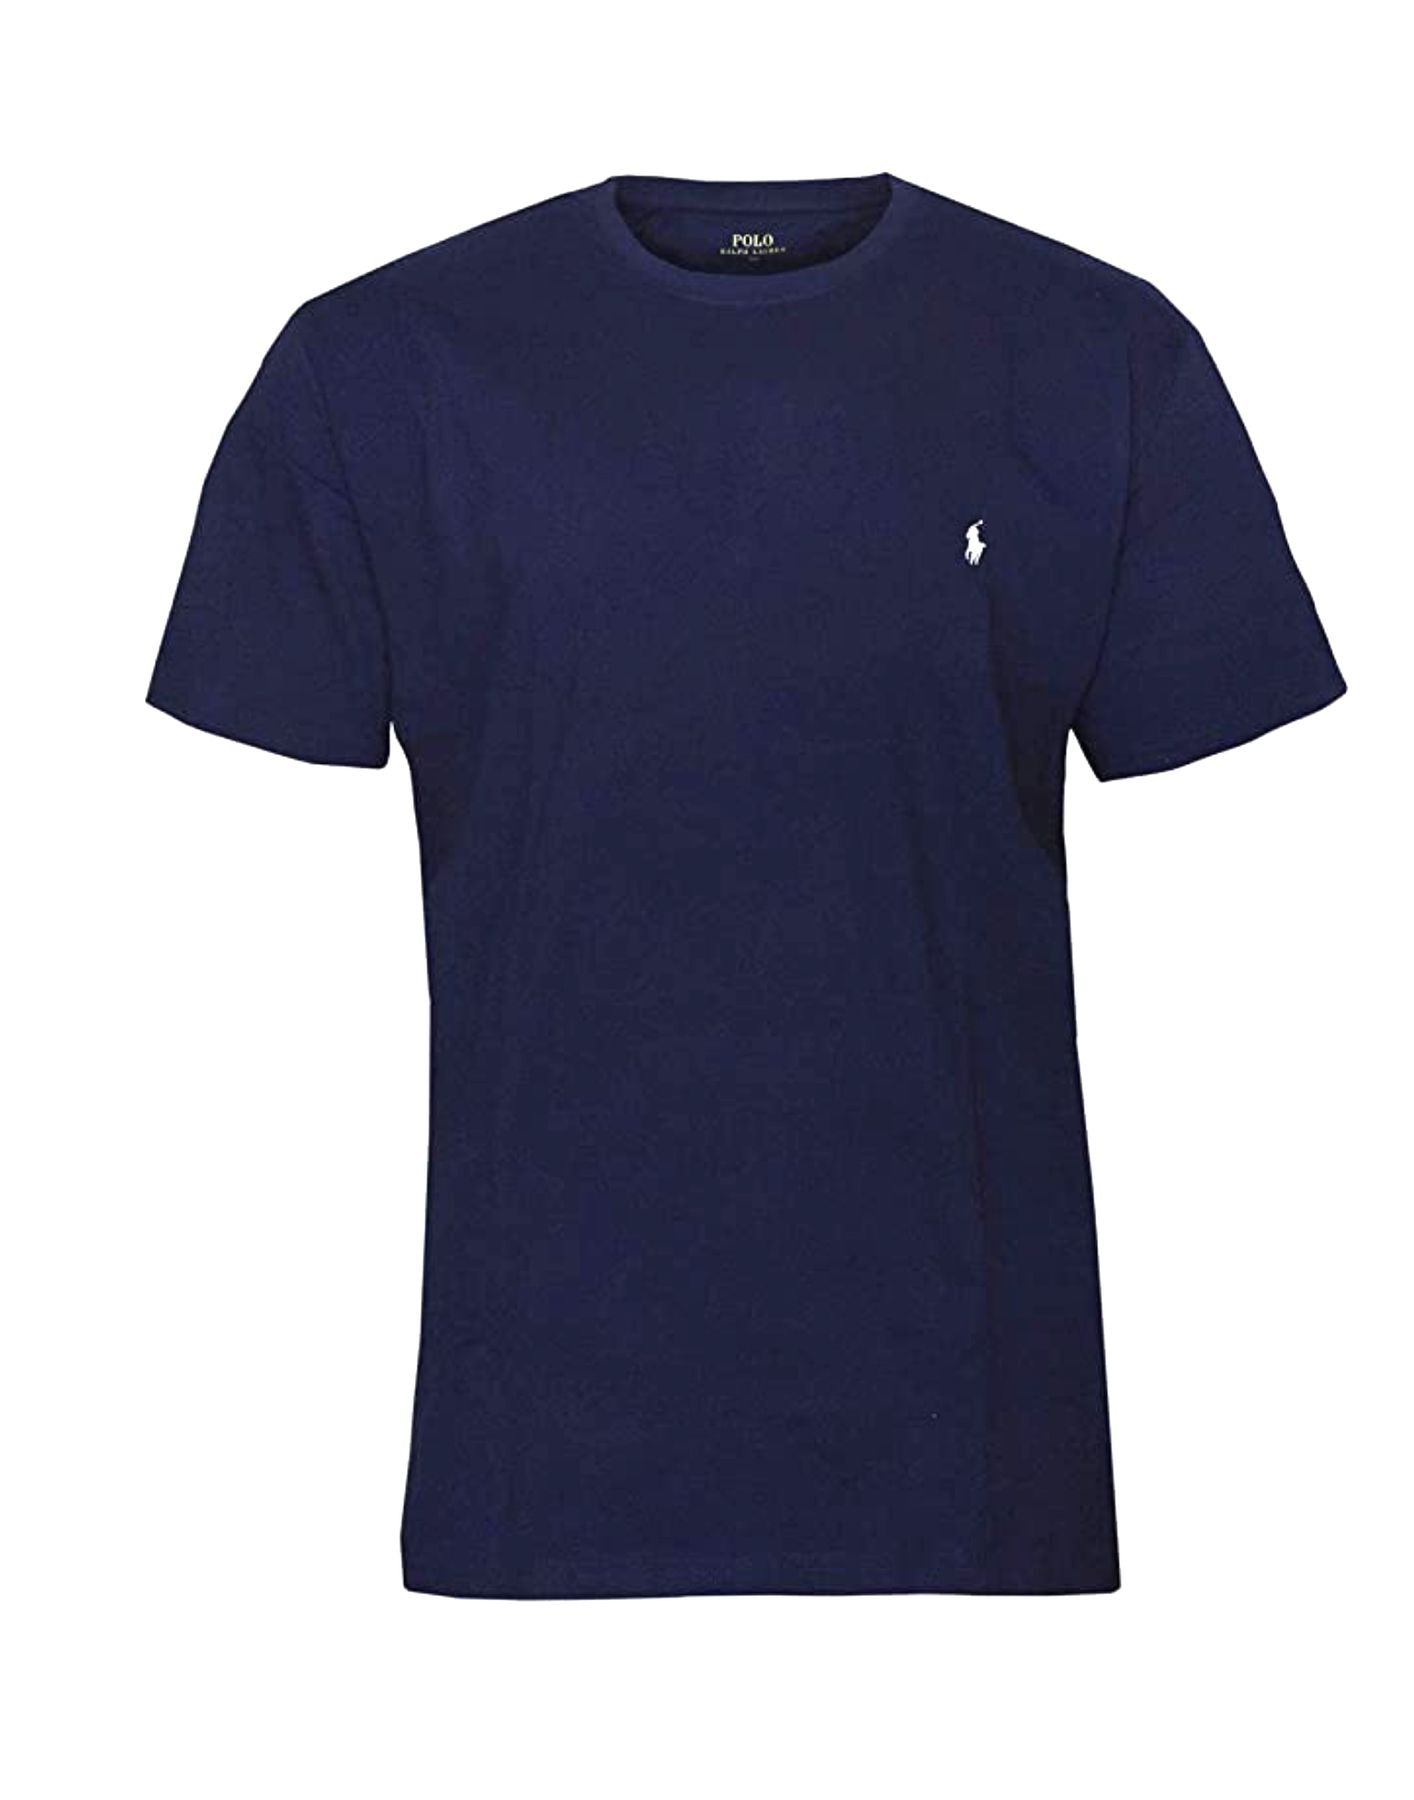 T-shirt man 714844756002 NAVY Polo Ralph Lauren